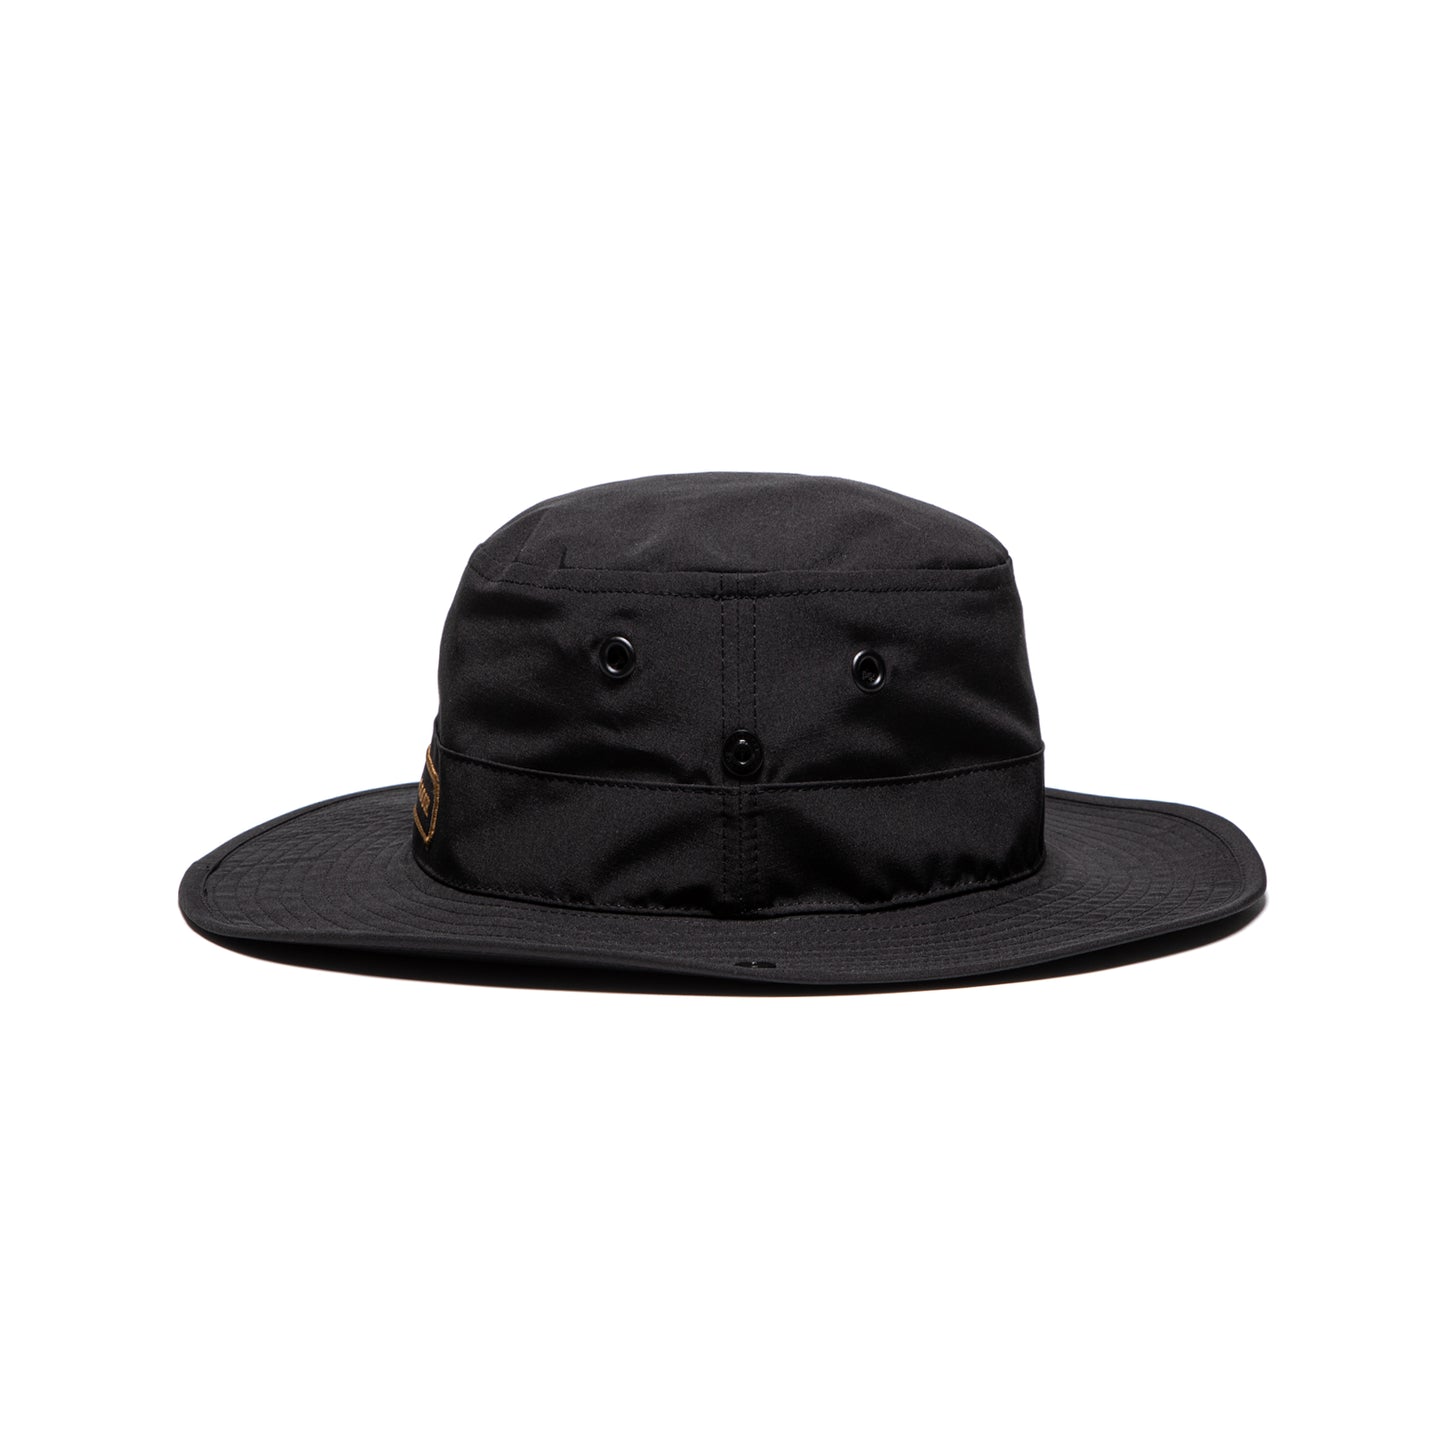 Canada Goose Venture Hat (Black)